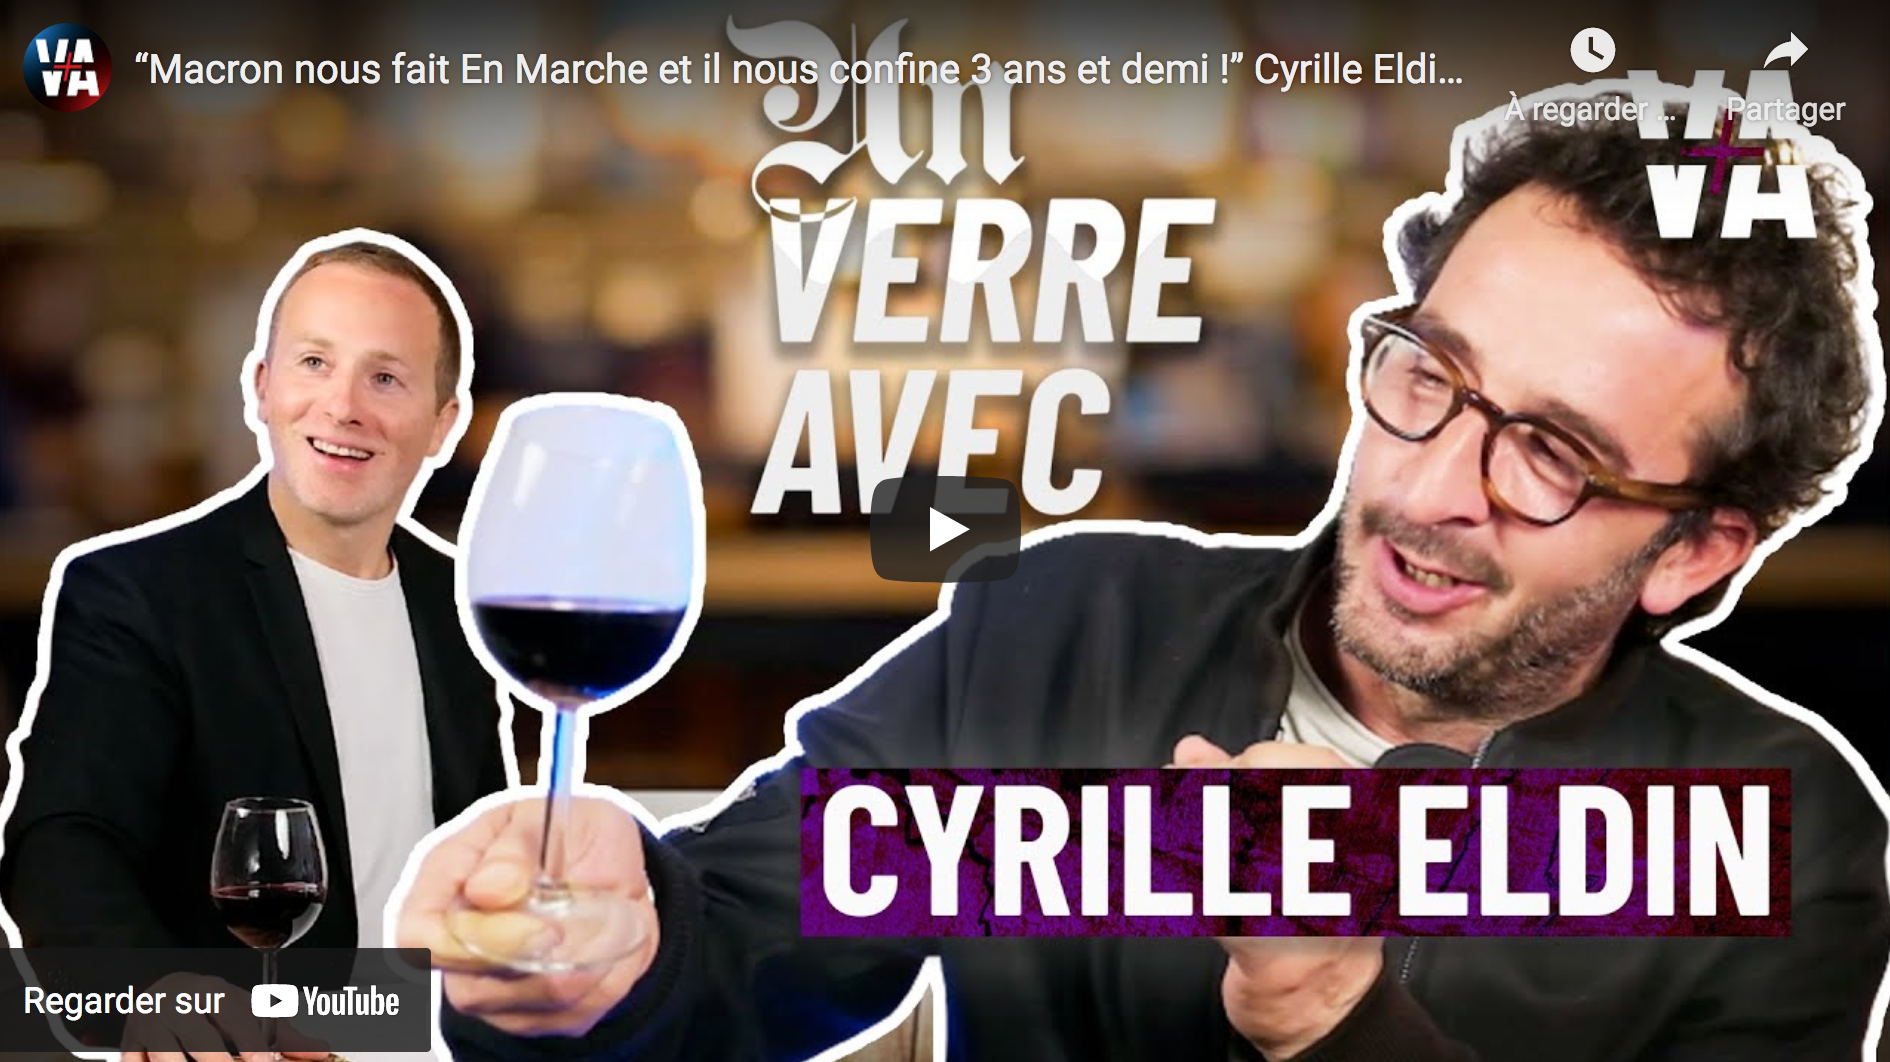 Cyrille Eldin : “Macron nous fait En Marche et il nous confine 3 ans et demi !” (VIDÉO)